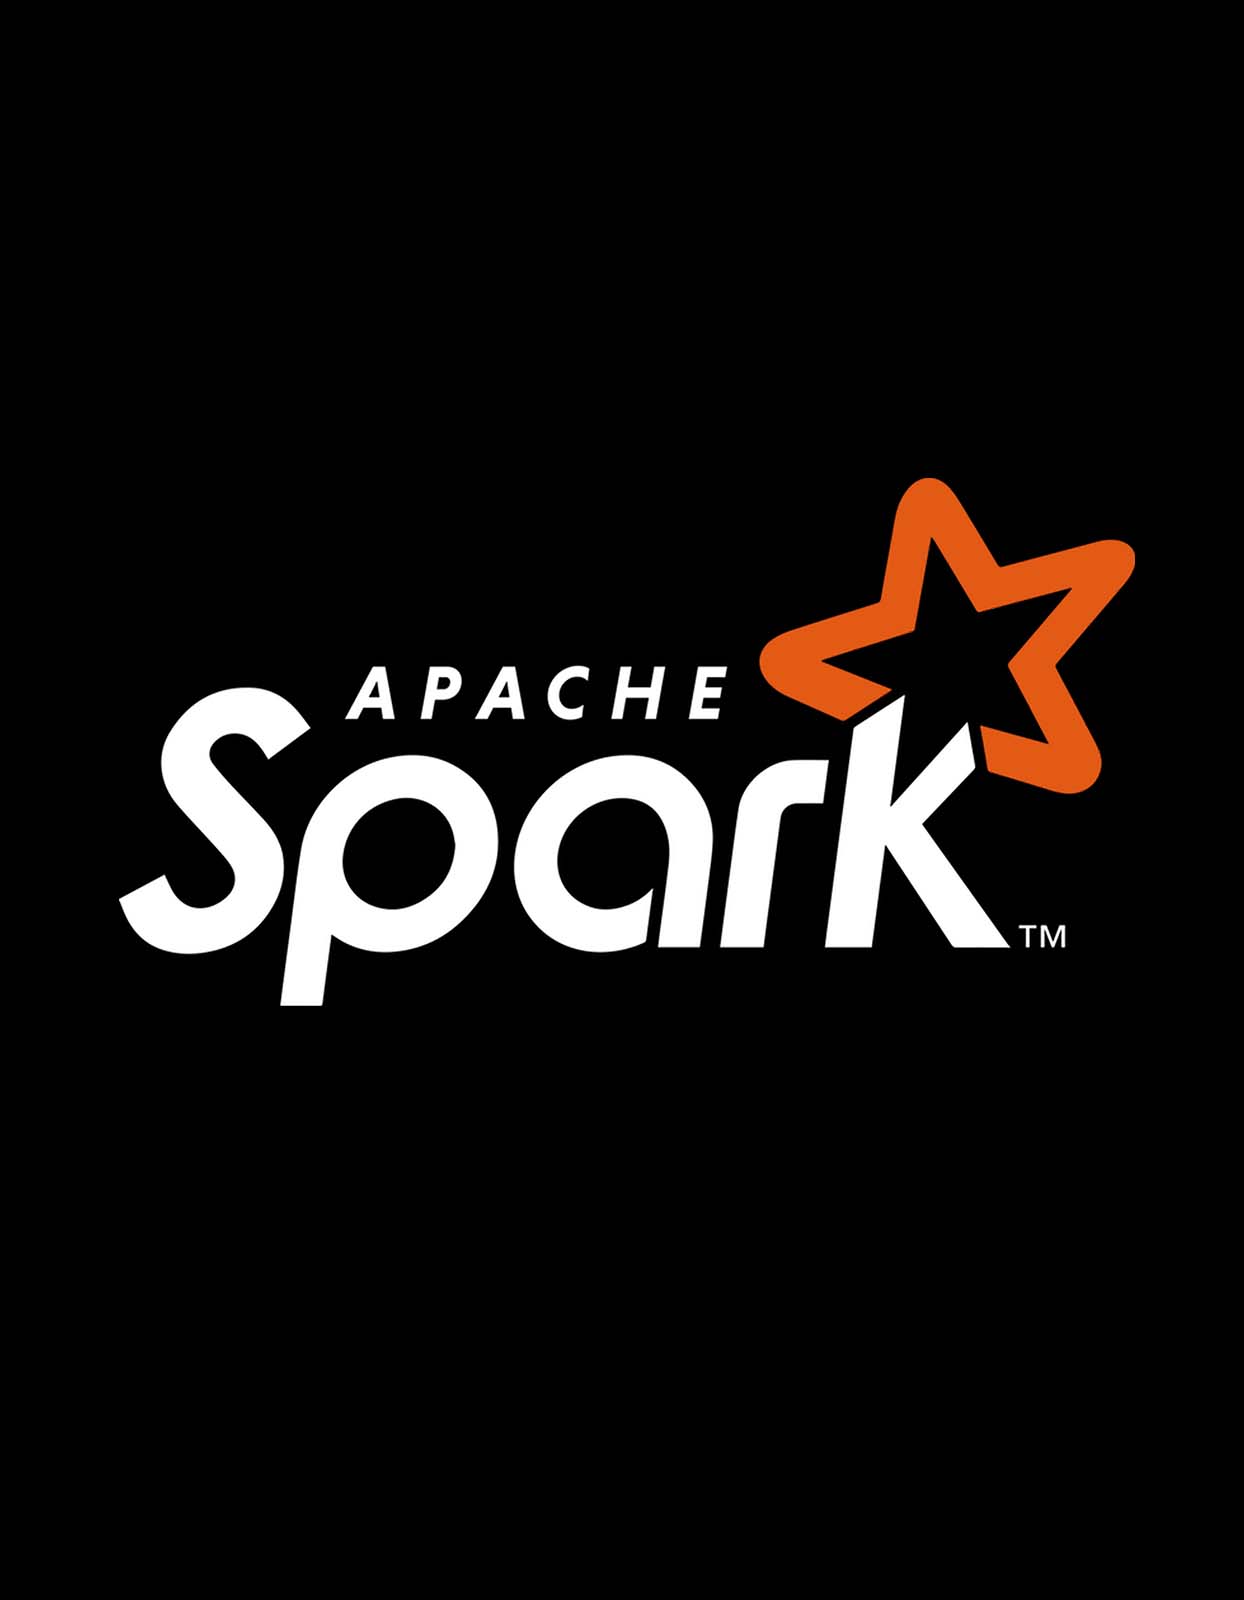 spark logo by Md. Sohel Rana on Dribbble